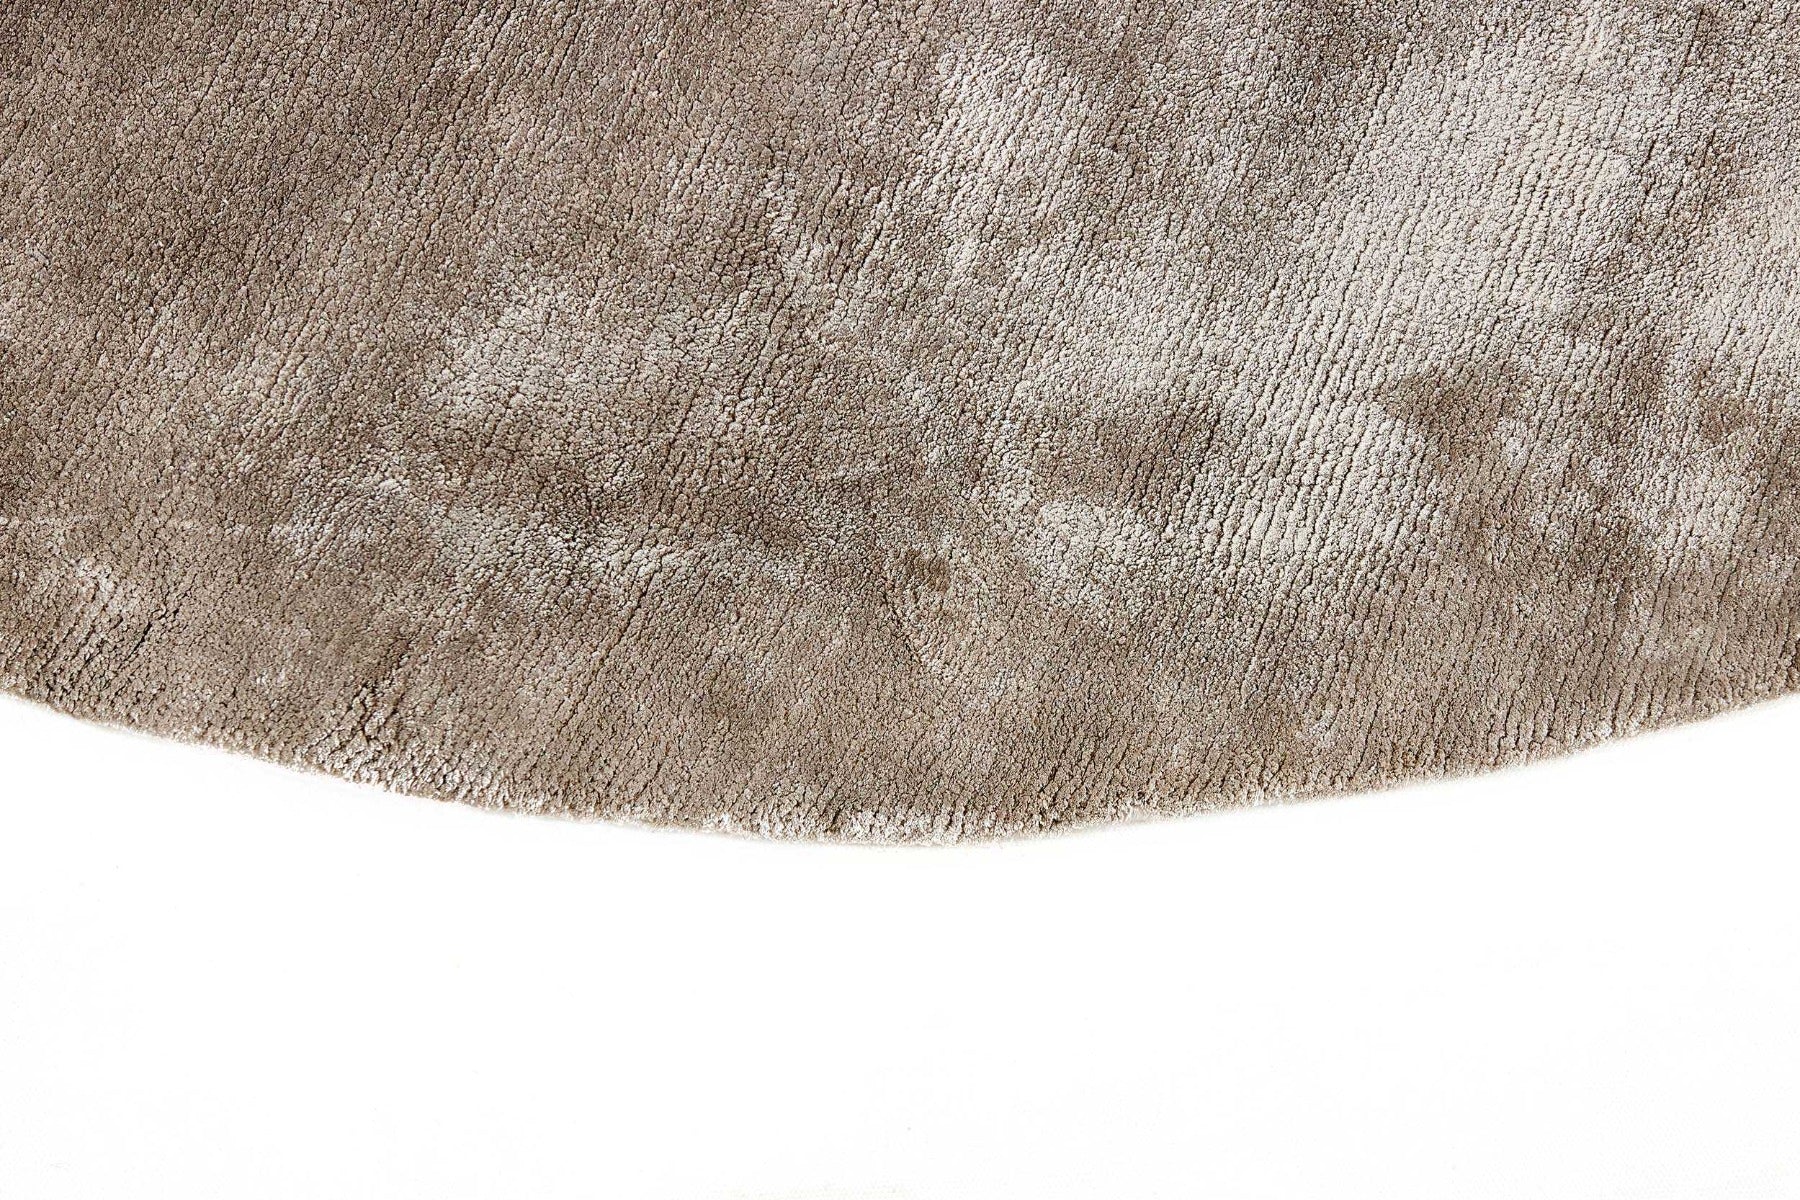 plain light grey circle rug
